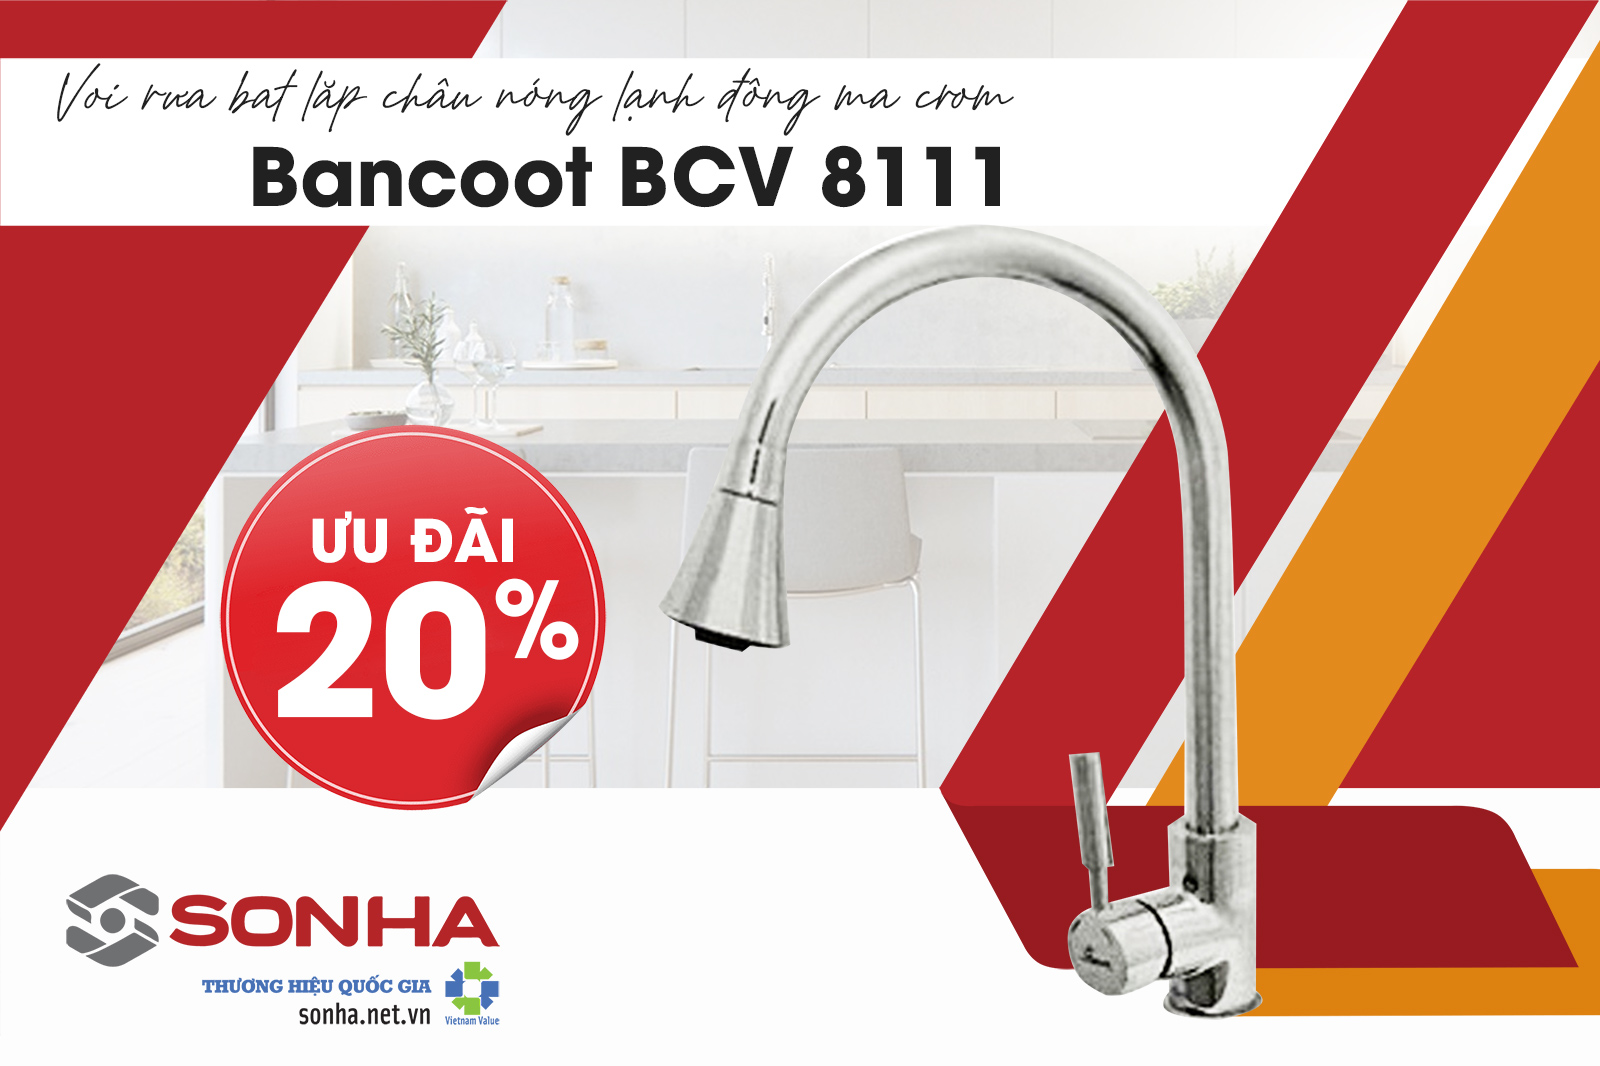 Tham khảo vòi rửa bát Bancoot BCV 8111